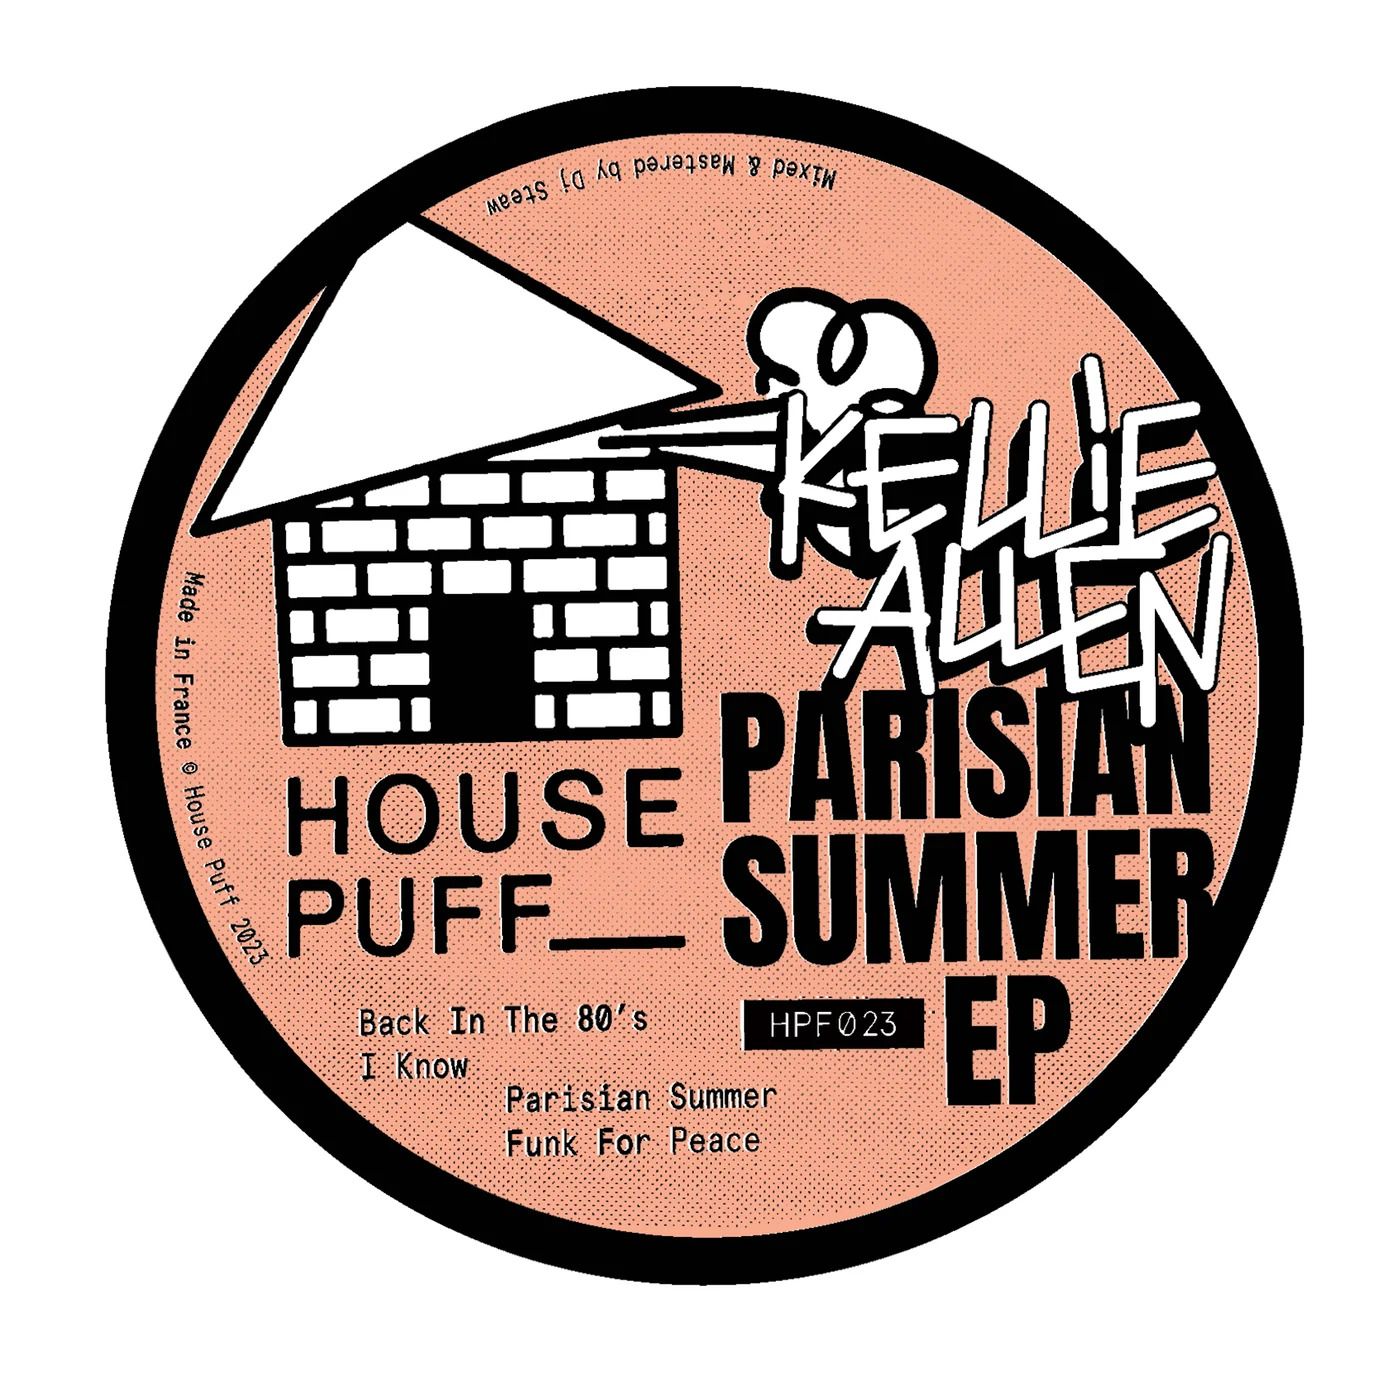 Kellie Allen/PARISIAN SUMMER EP 12"